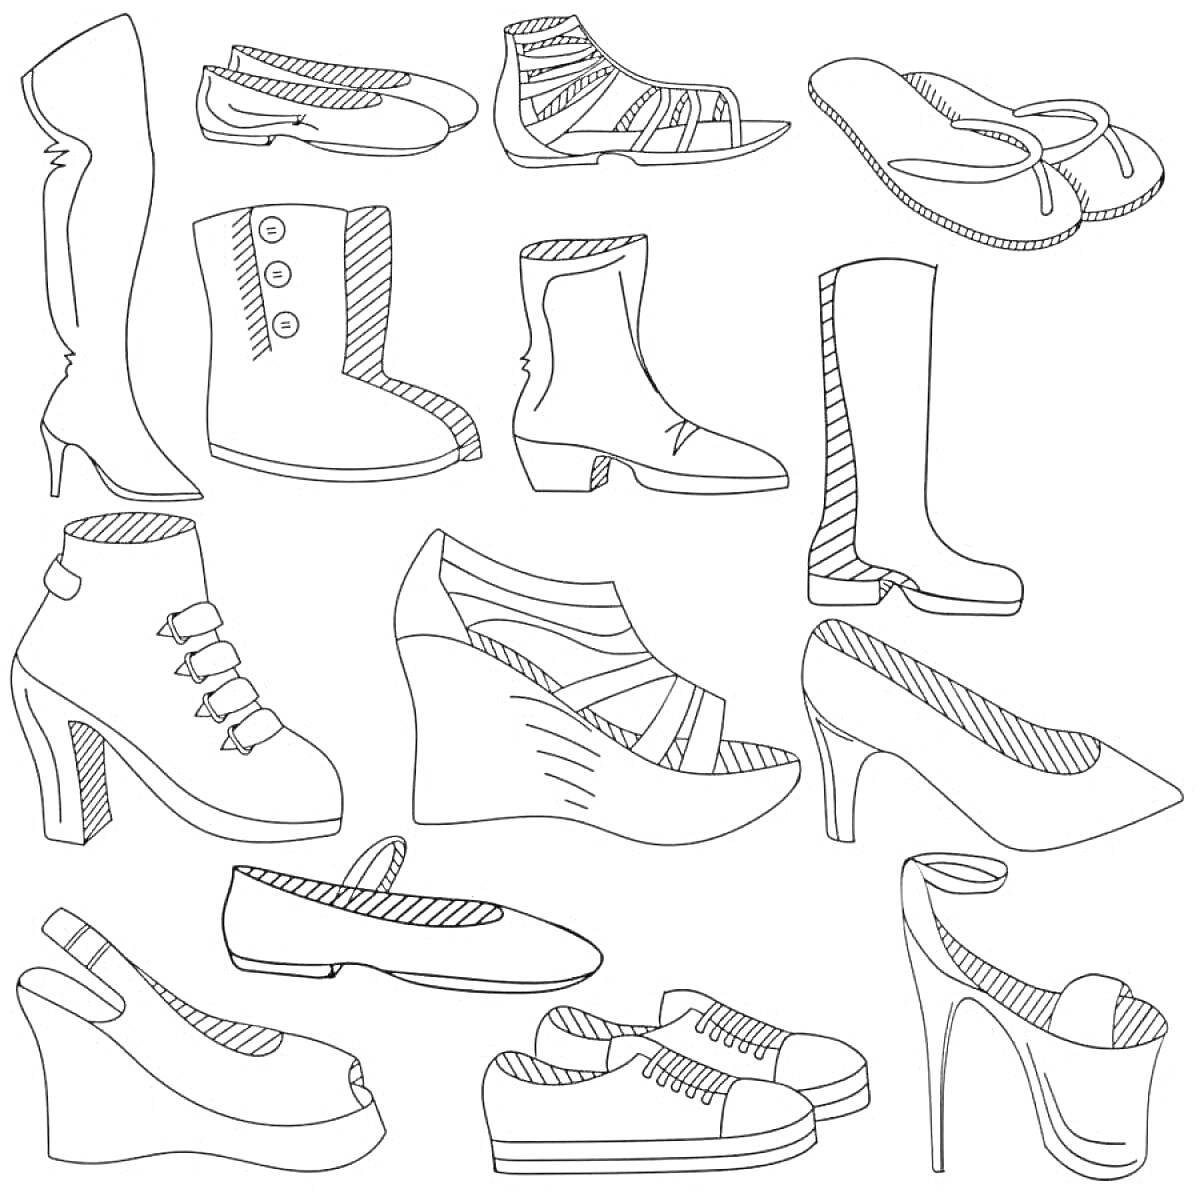 На раскраске изображено: Обувь, Сапоги, Ботинки, Туфли, Босоножки, Кеды, Балетки, Обувь для детей, Обувь на платформе